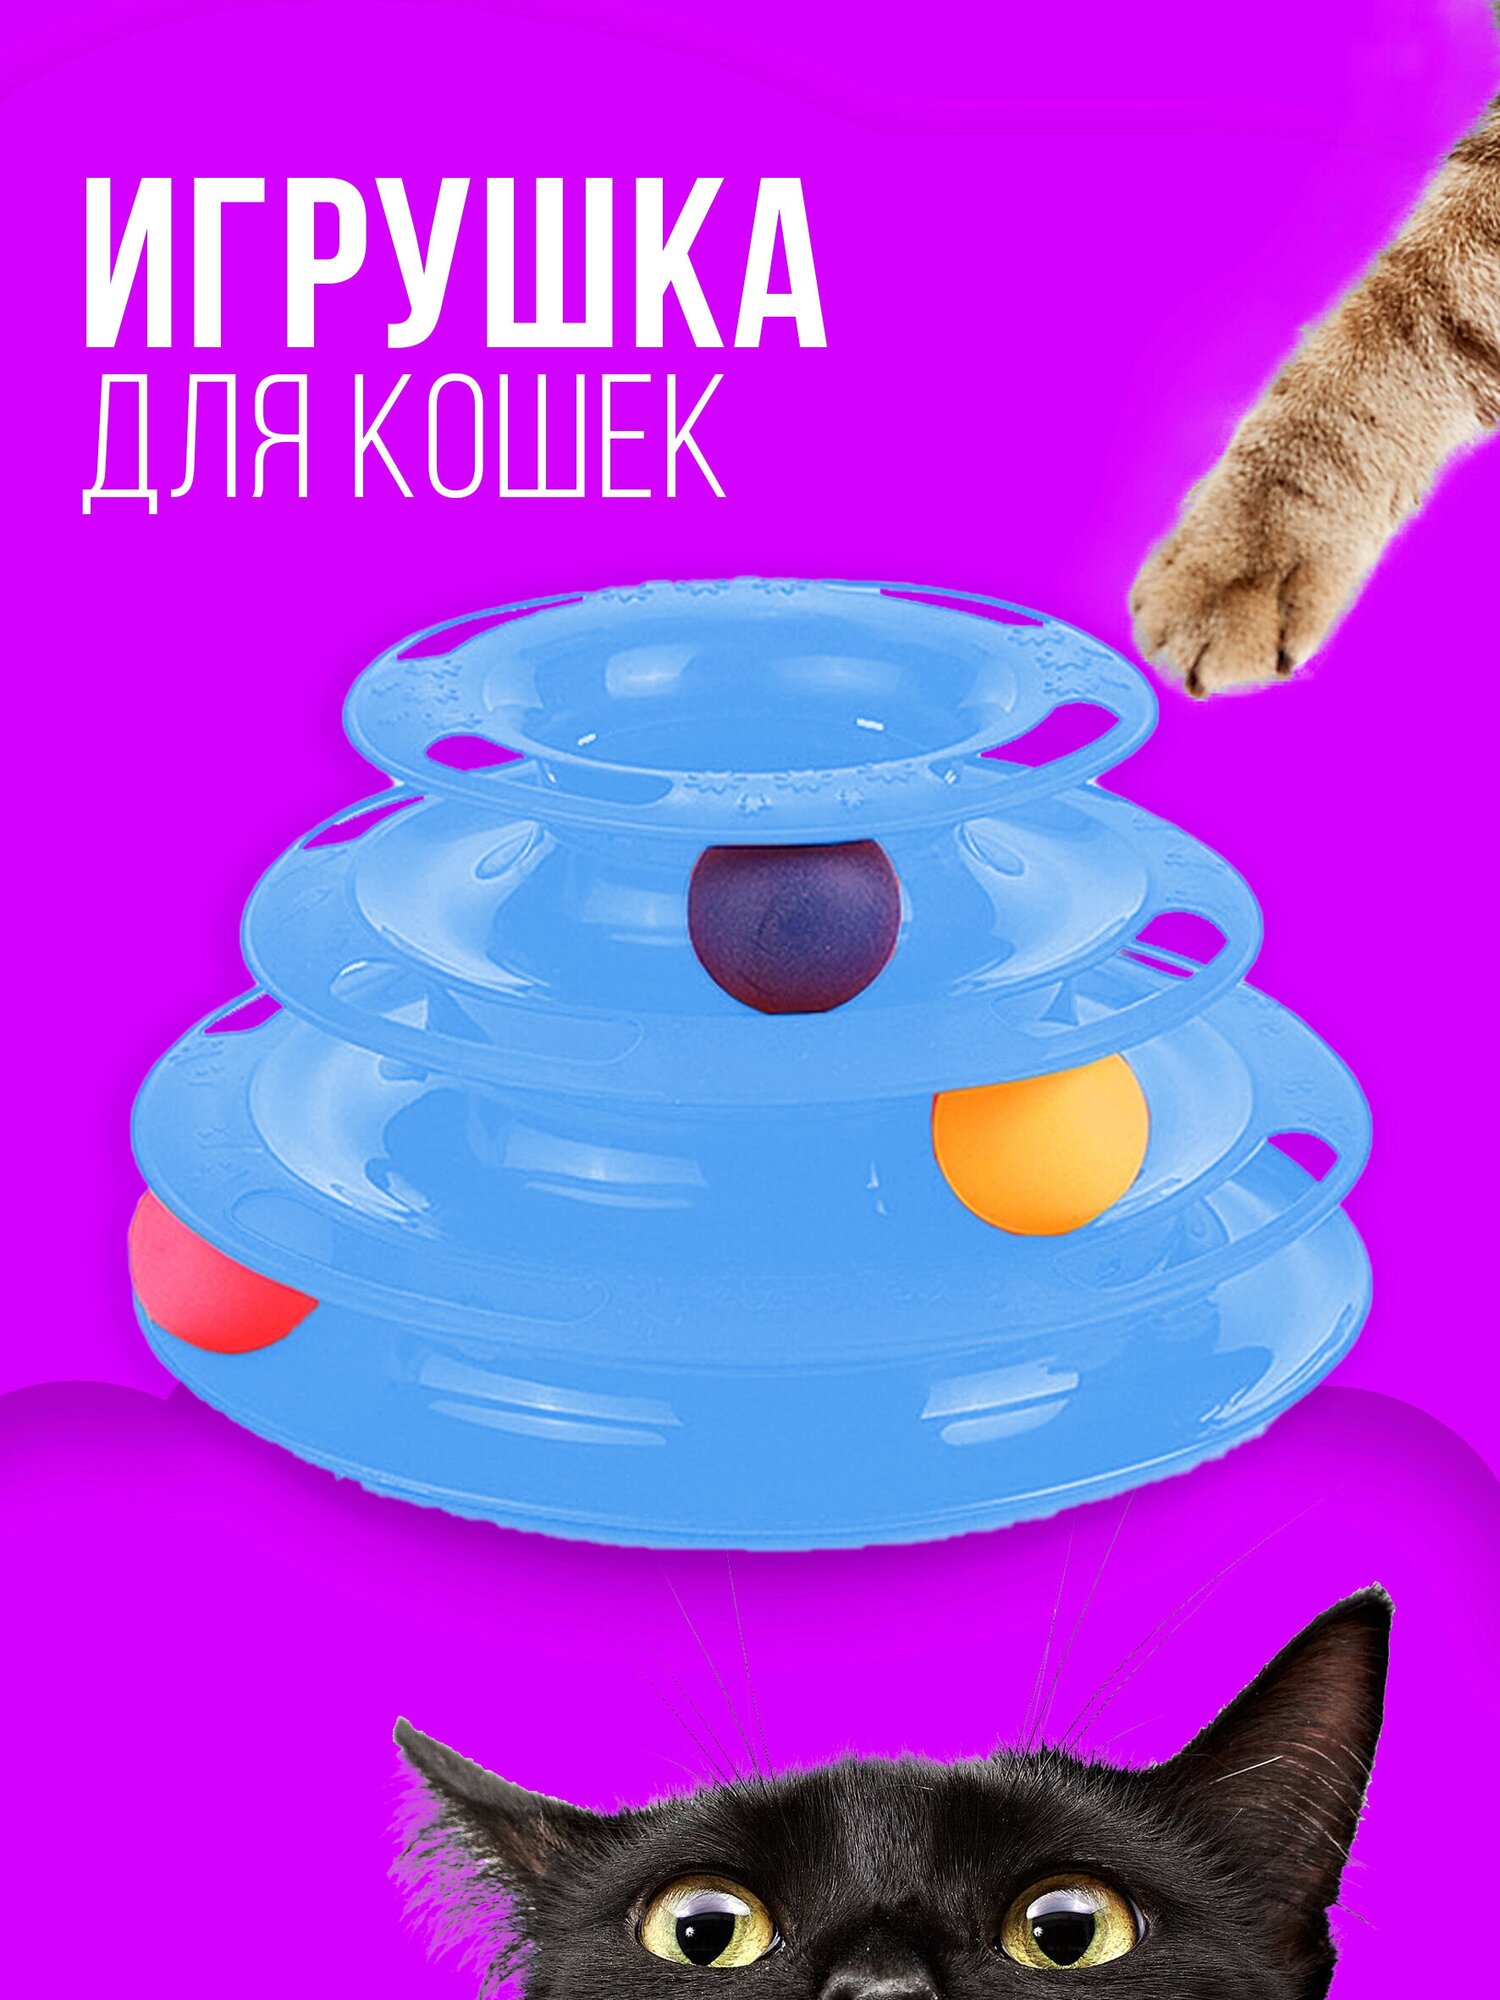 Игрушка для кошек интерактивная / Игрушка для кошек шарики, 3 уровня, 3 шарика / пирамида, башня, интерактивная, для котов, котят, котенка. Синий